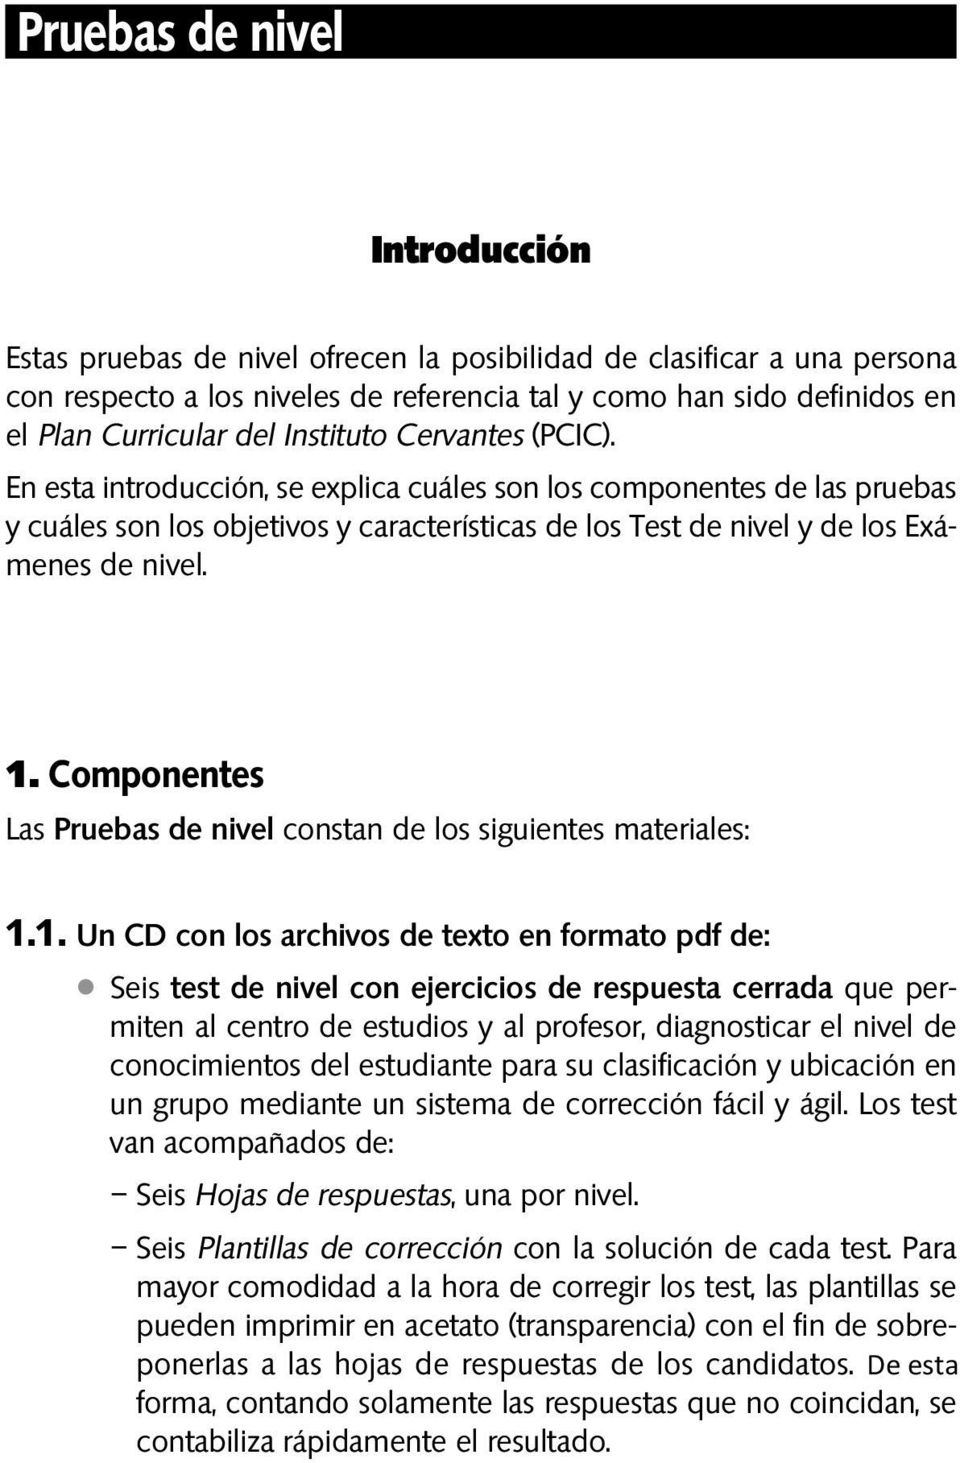 1. Componentes Las Pruebas de nivel constan de los siguientes materiales: 1.1. Un CD con los archivos de texto en formato pdf de: Seis test de nivel con ejercicios de respuesta cerrada que per -